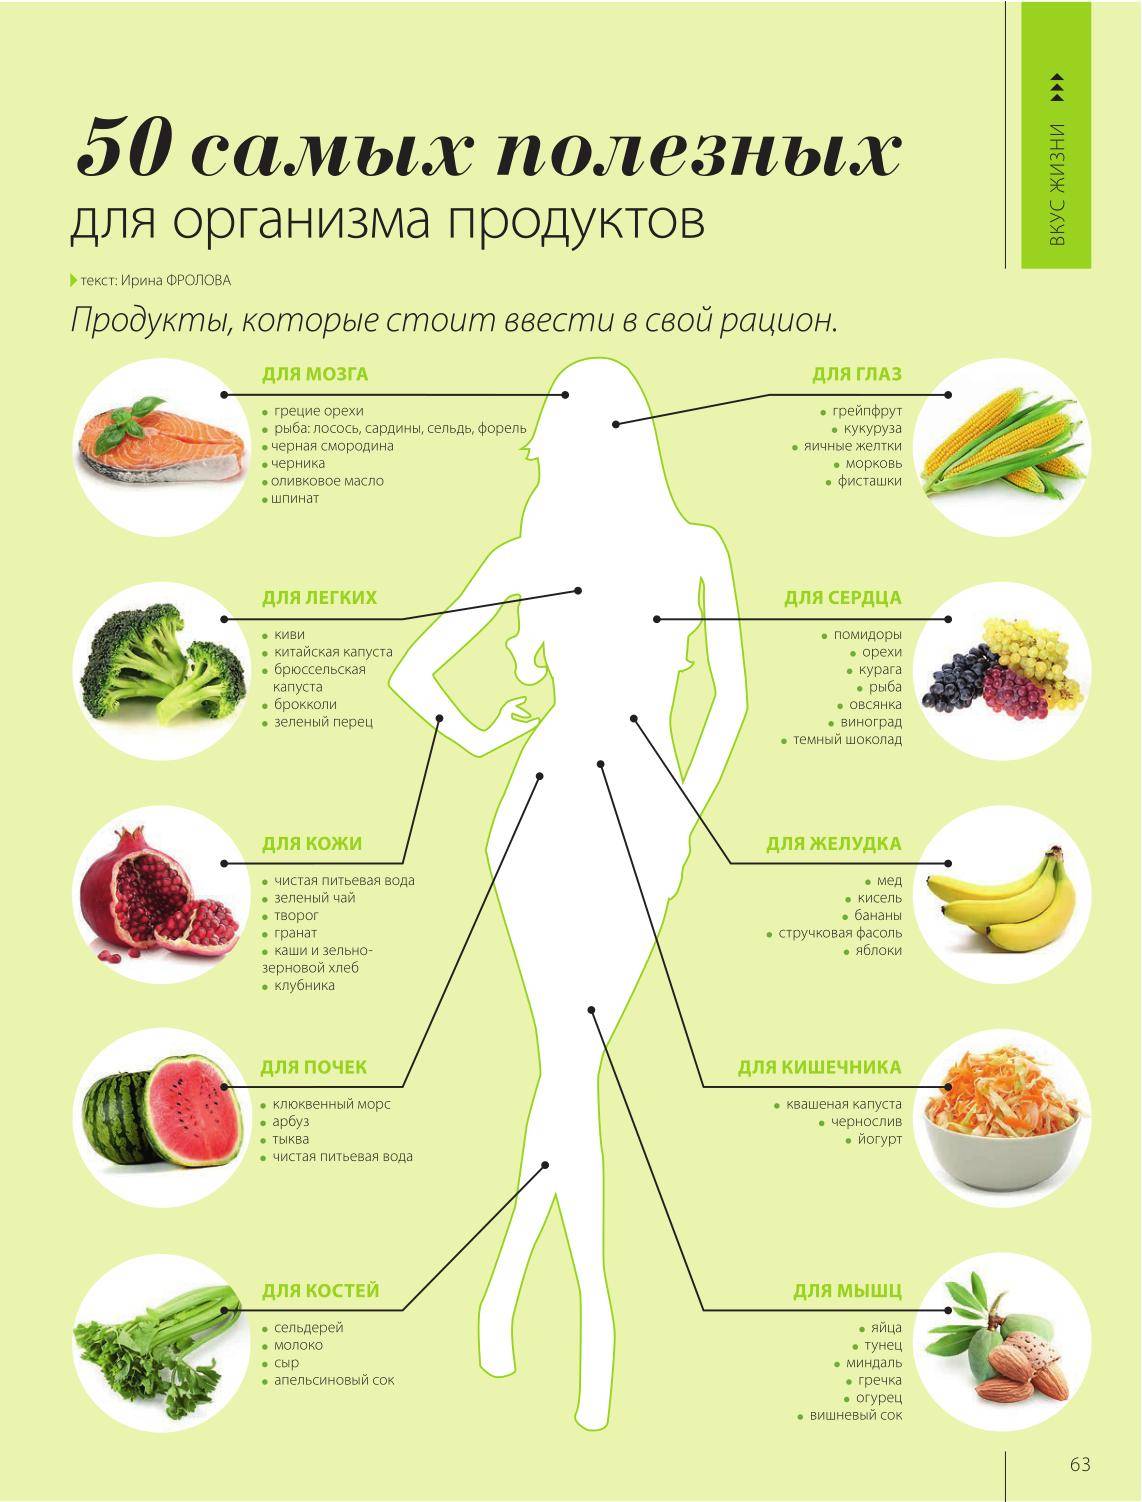 Список полезных продуктов питания, которые можно найти в своем холодильнике